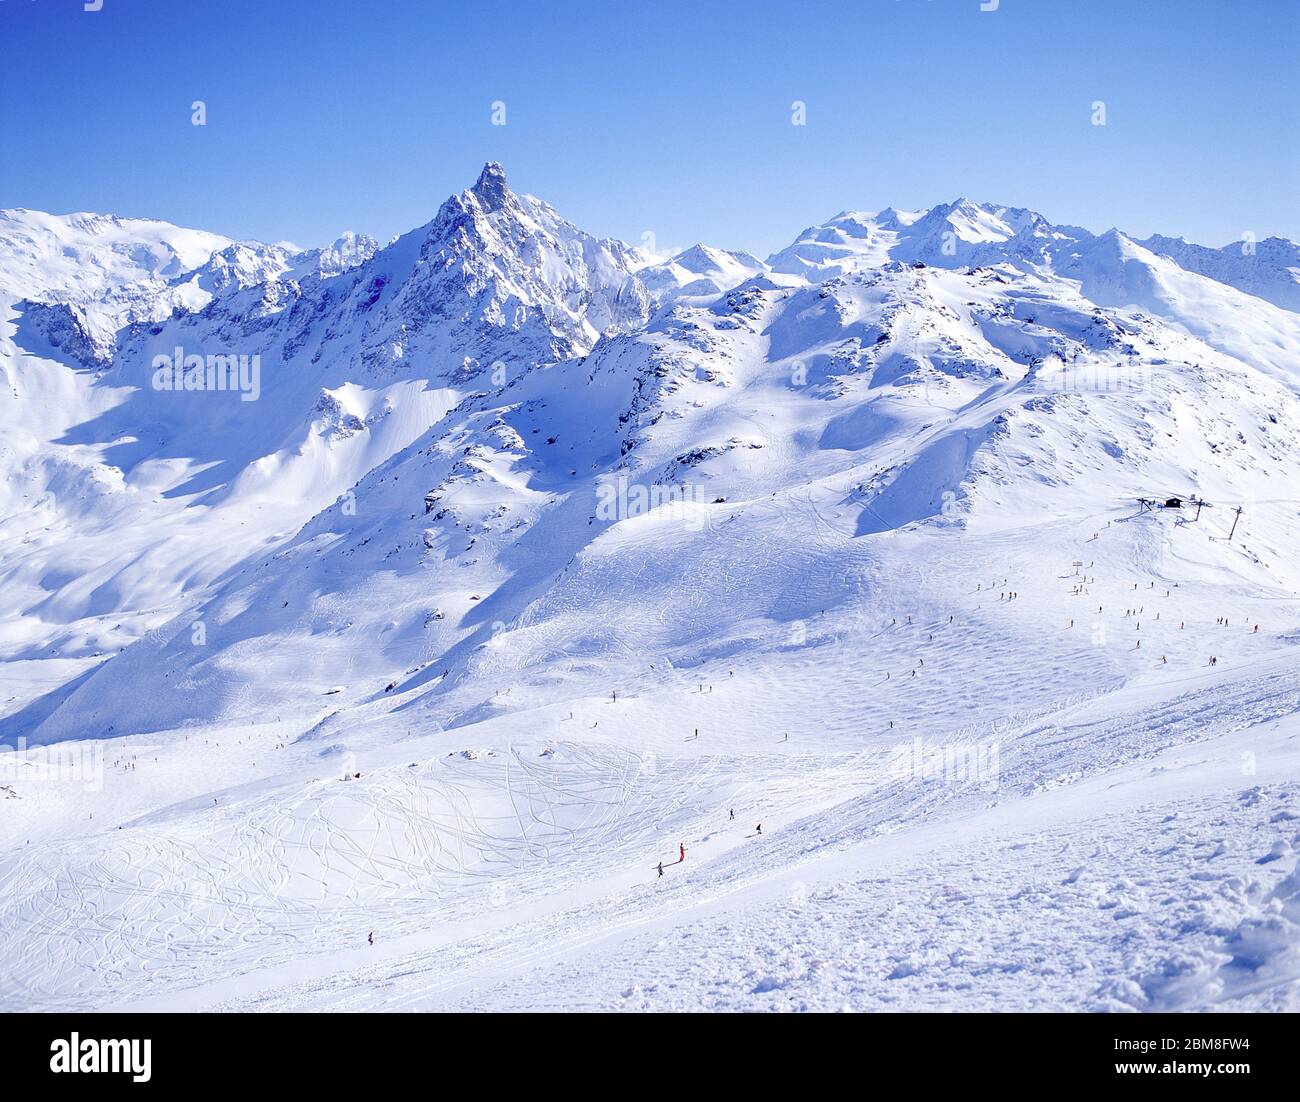 Pistes de ski et montagnes, Méribel, Savoie, France Banque D'Images